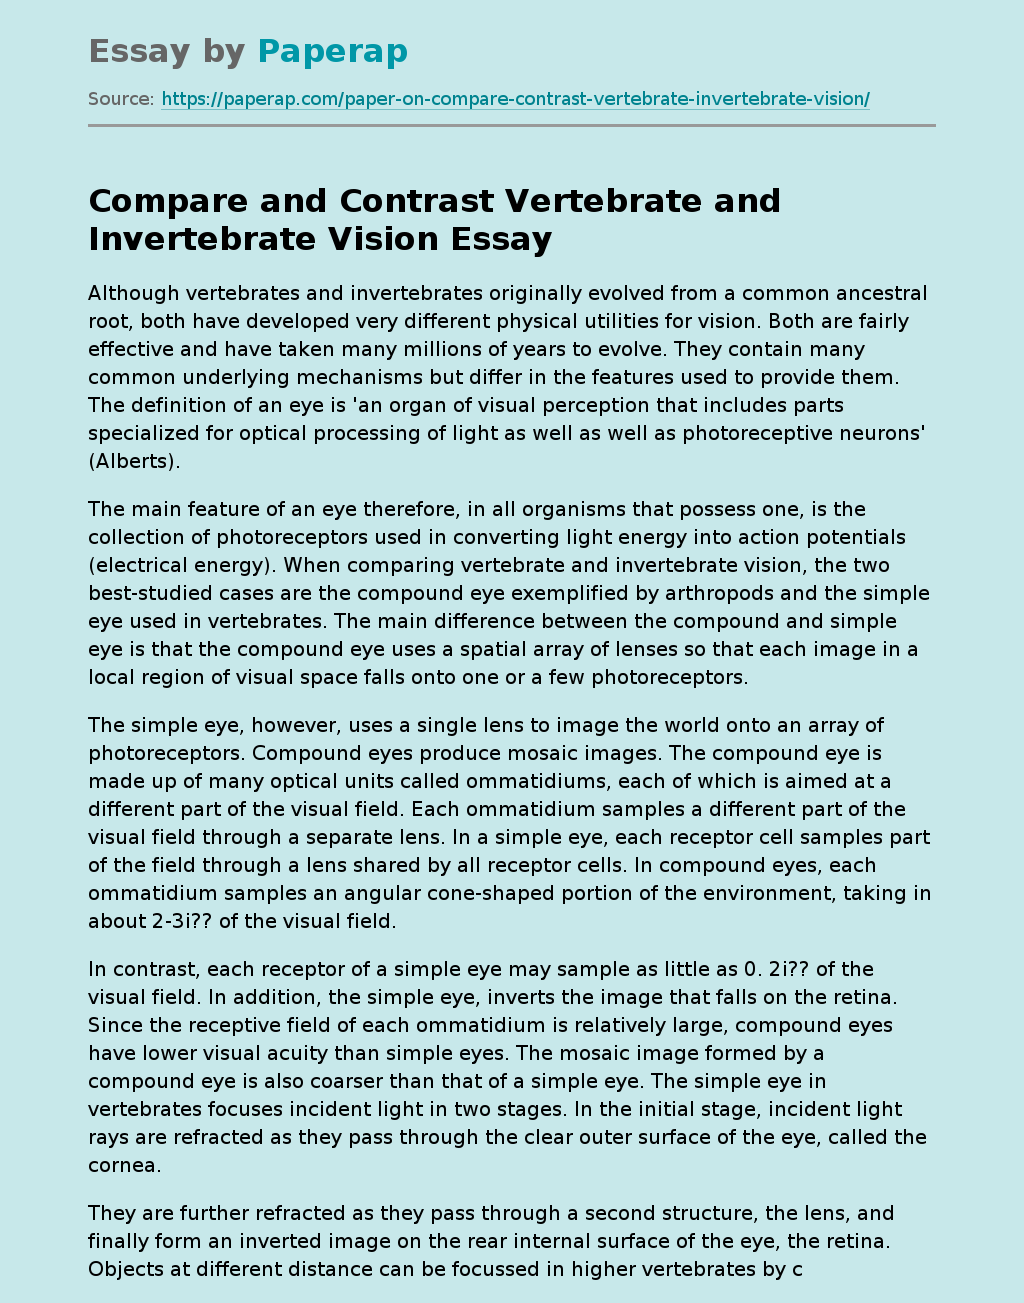 Compare and Contrast Vertebrate and Invertebrate Vision